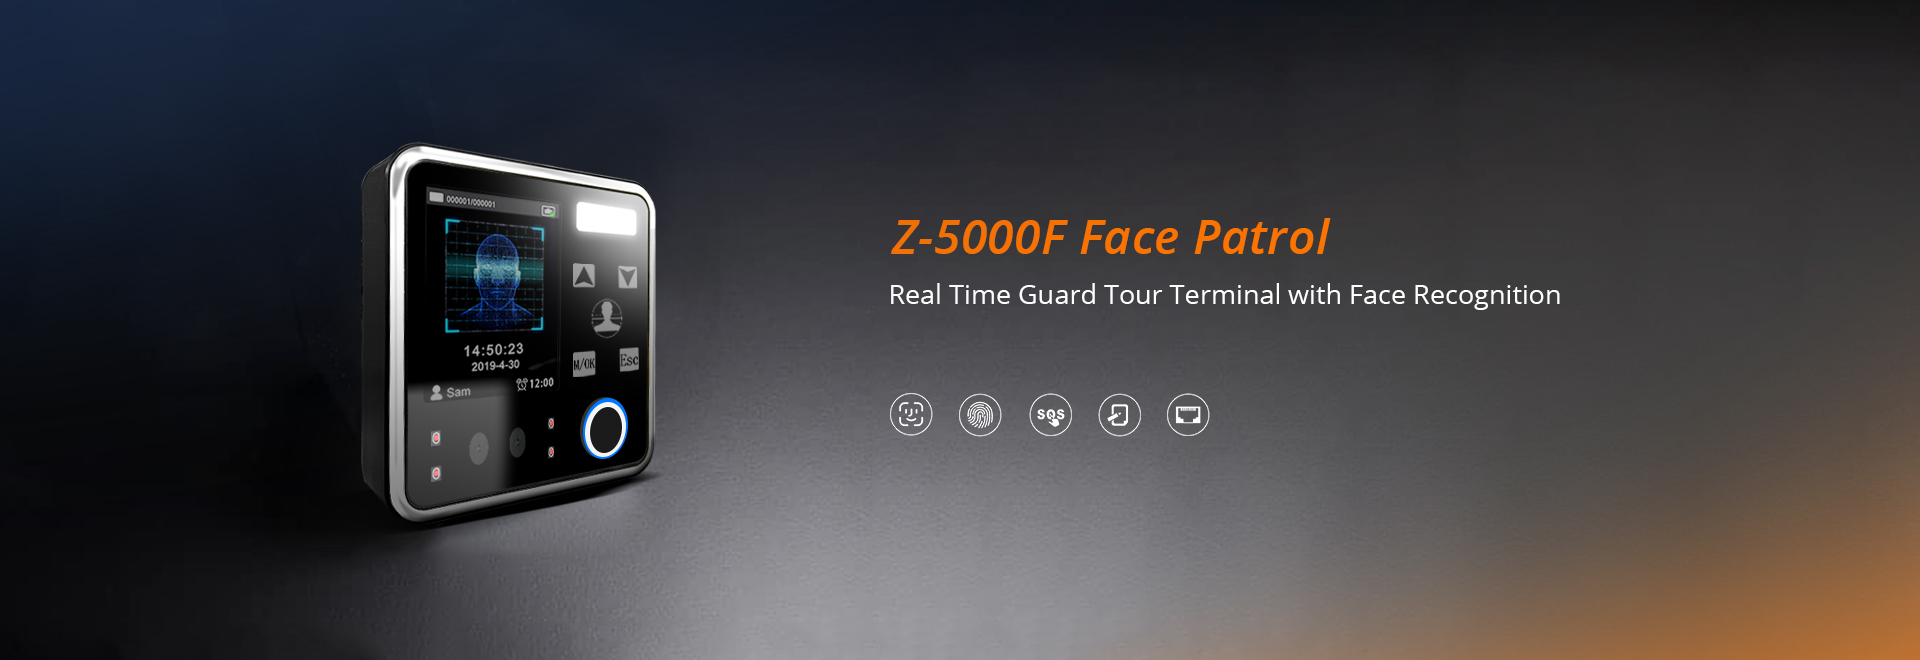 Face recognition guard tour system